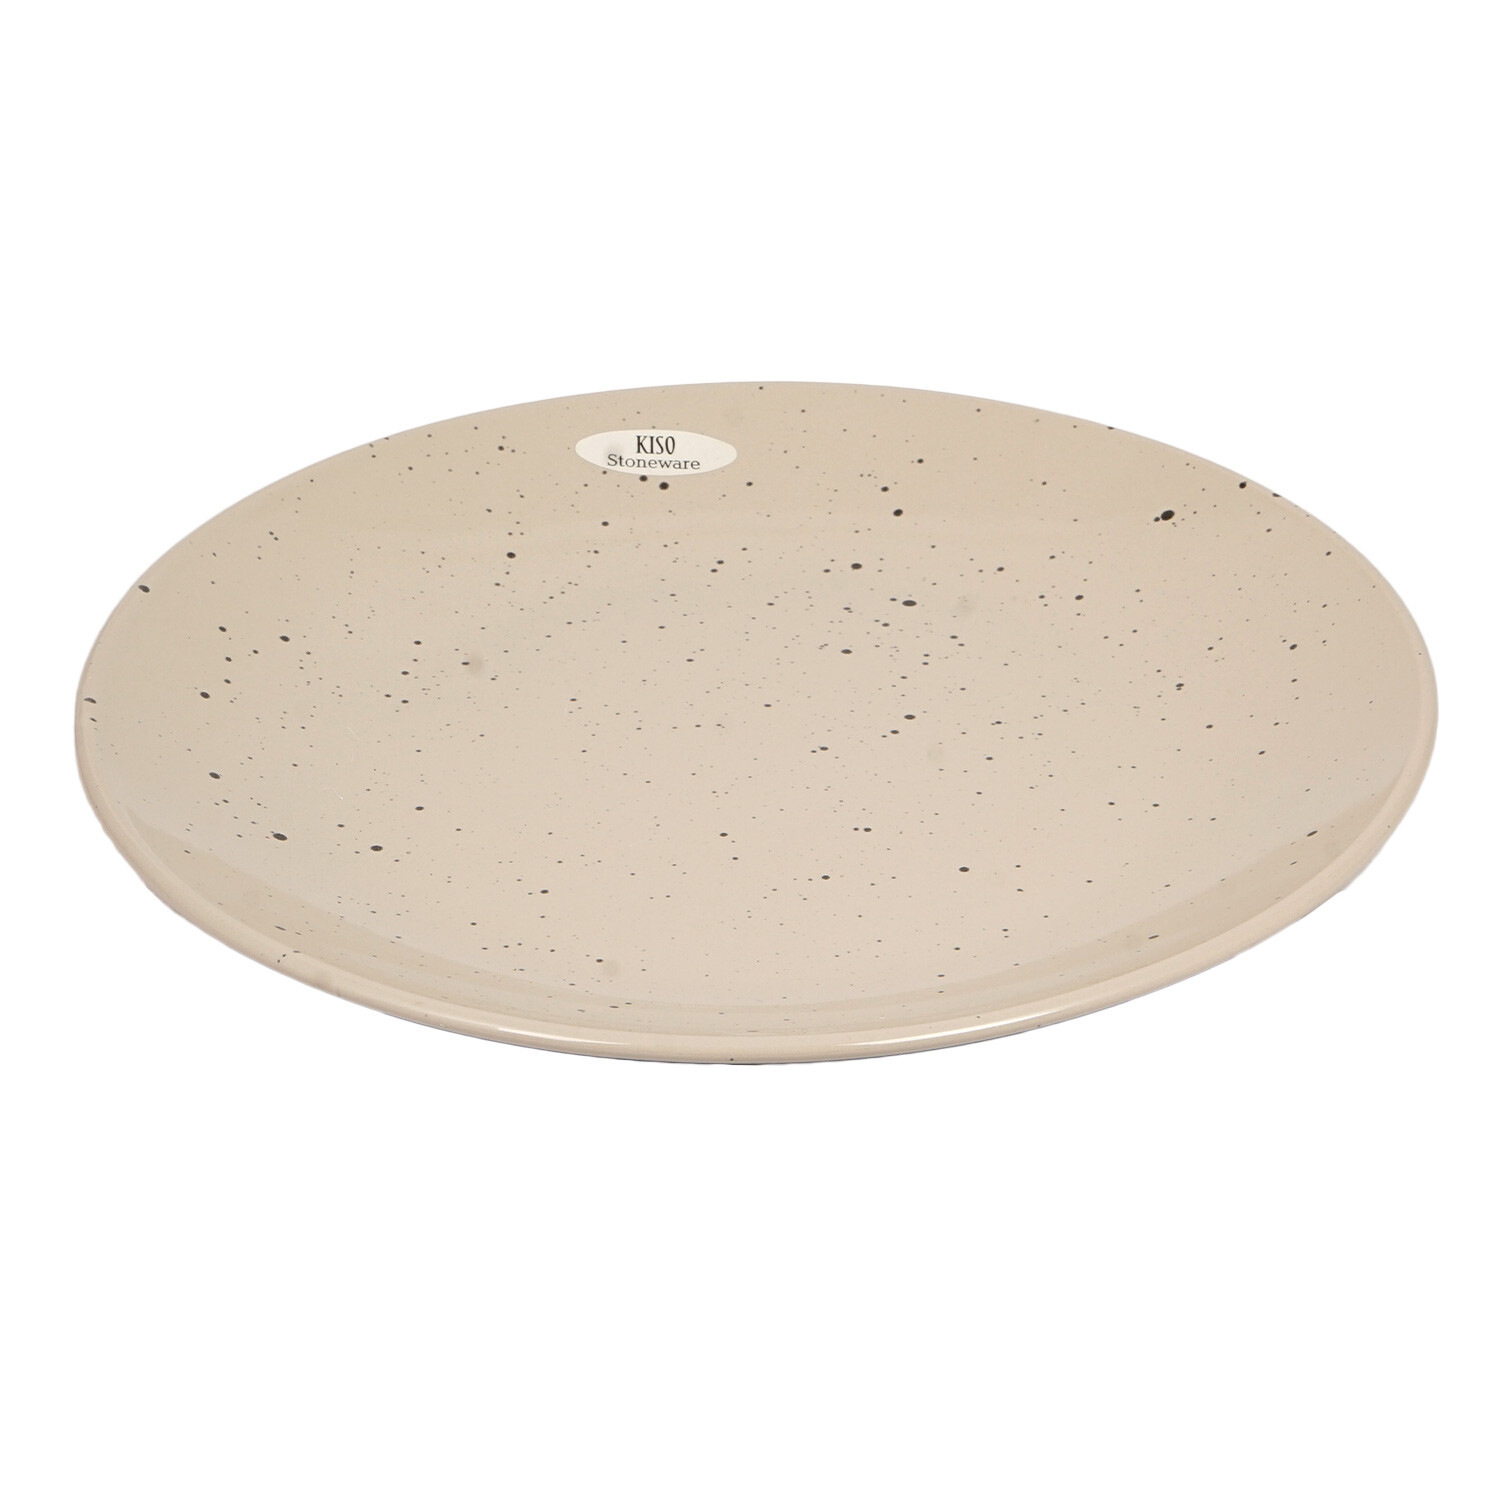 Kiso Warm Grey Speckled Dinner Plate Image 3